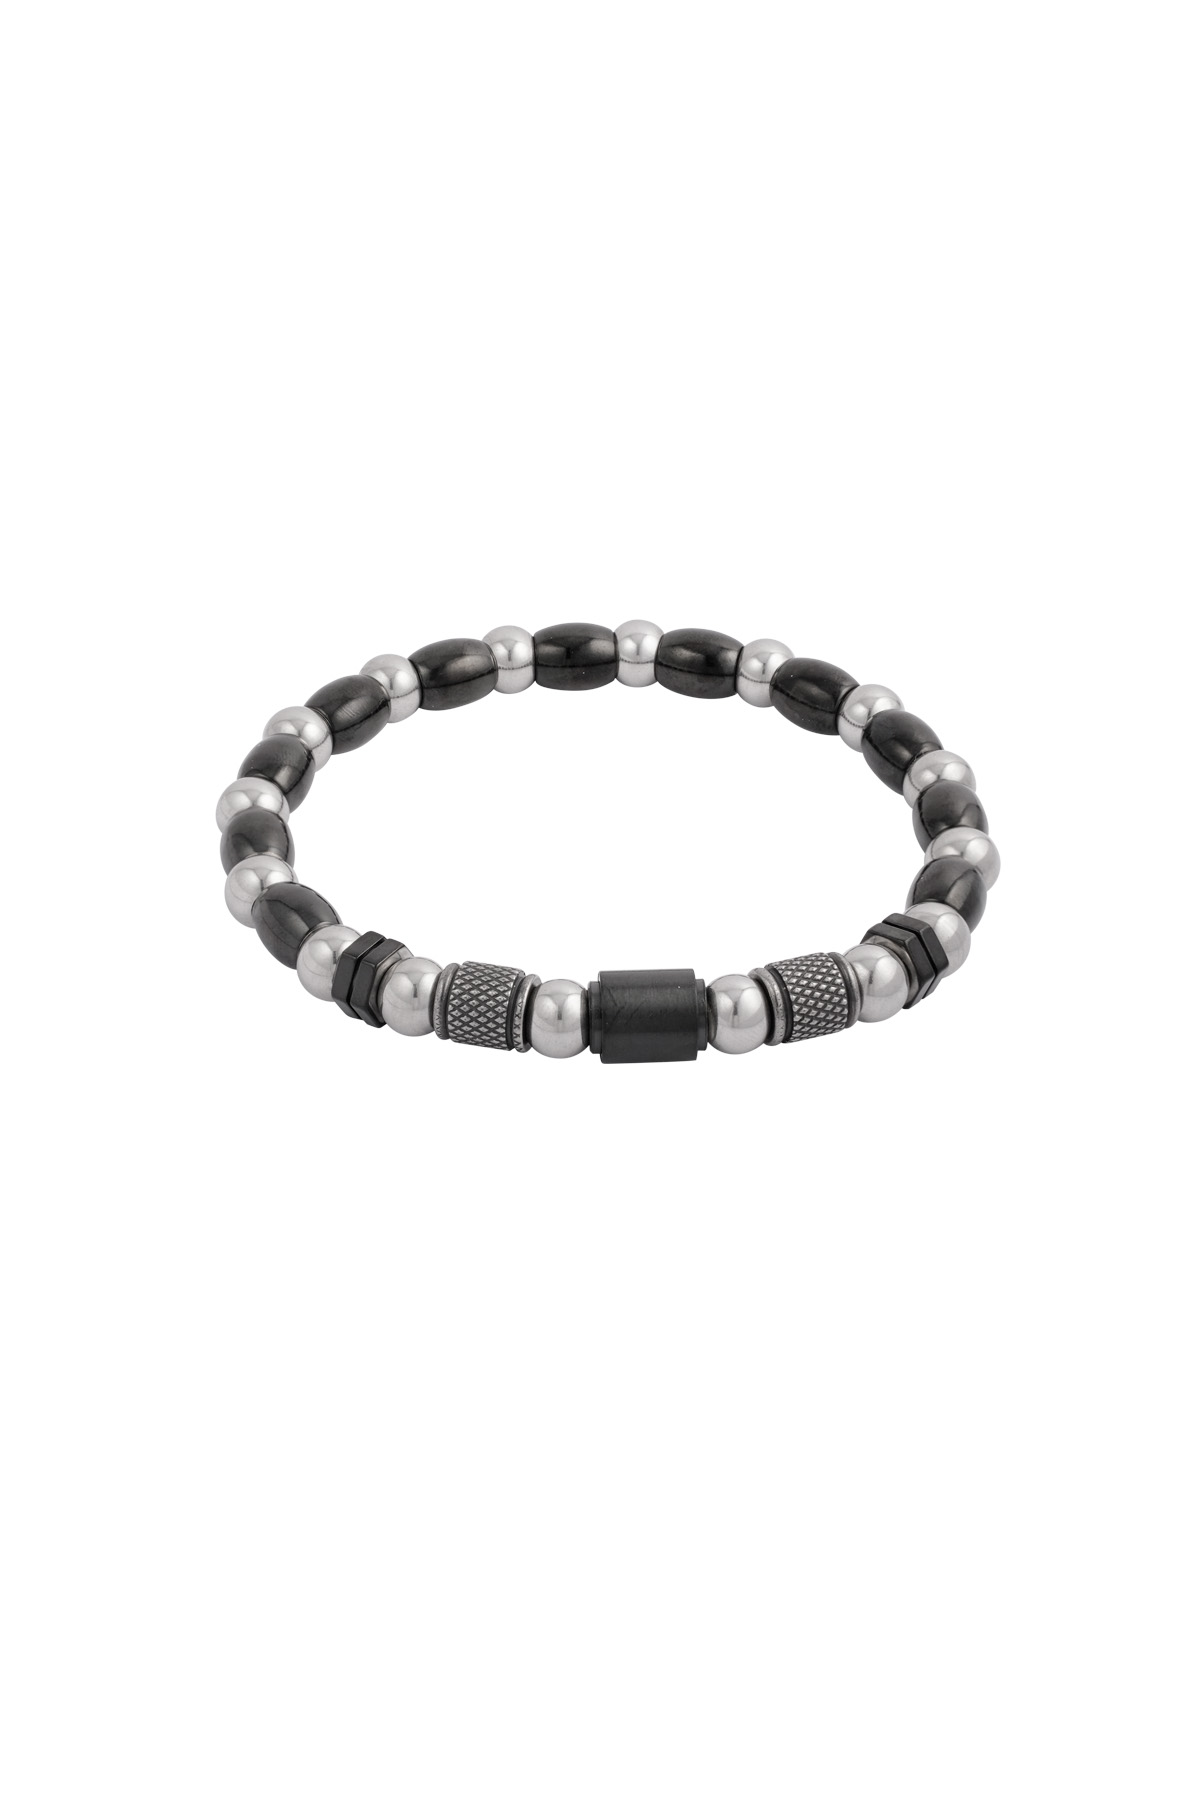 Heren armband zenith - zwart zilver